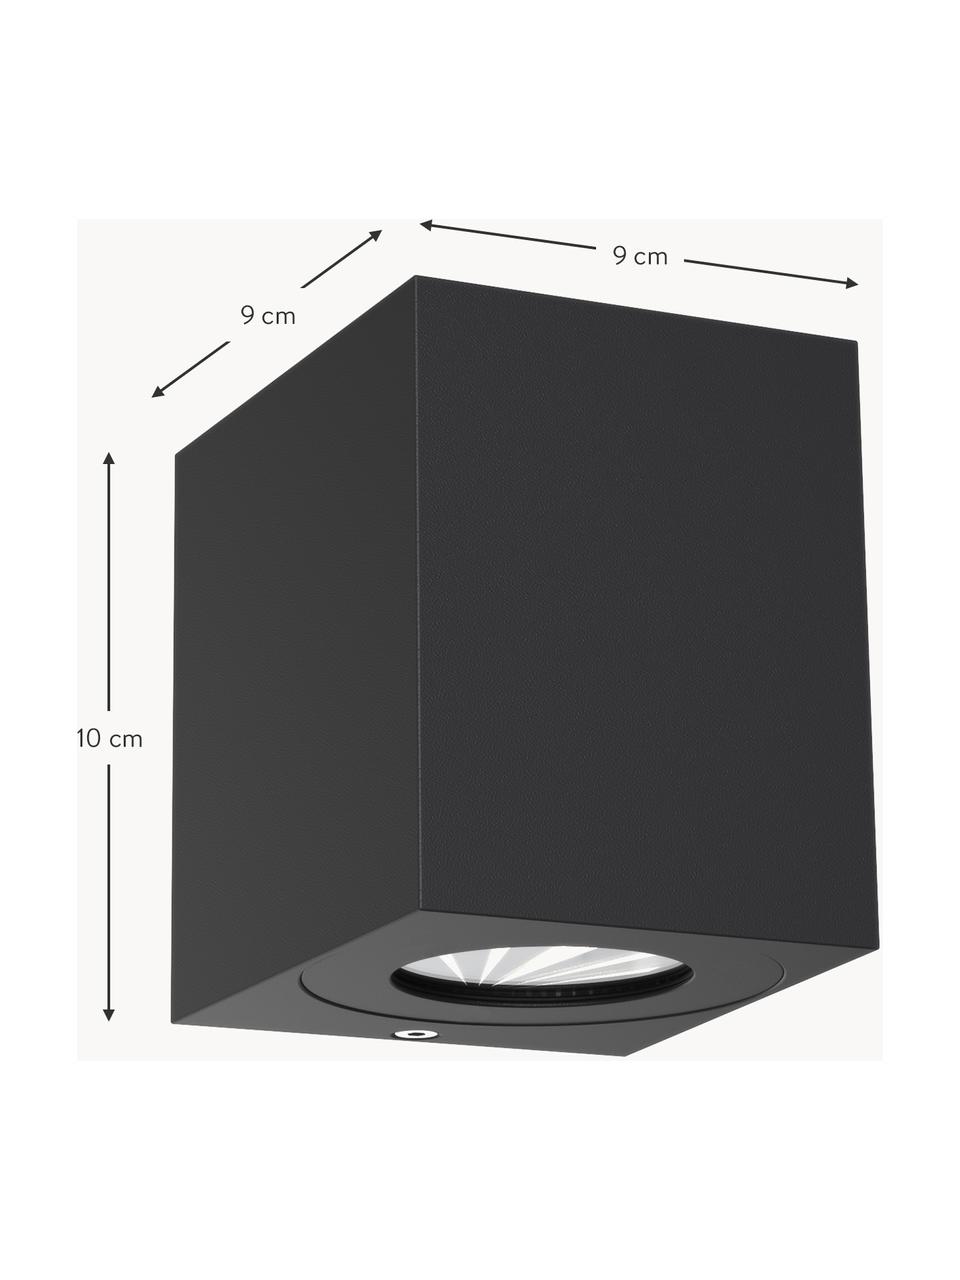 LED-Aussenwandleuchte Canto Kubi mit verstellbarem Lichtkegel, Schwarz, B 9 x H 10 cm